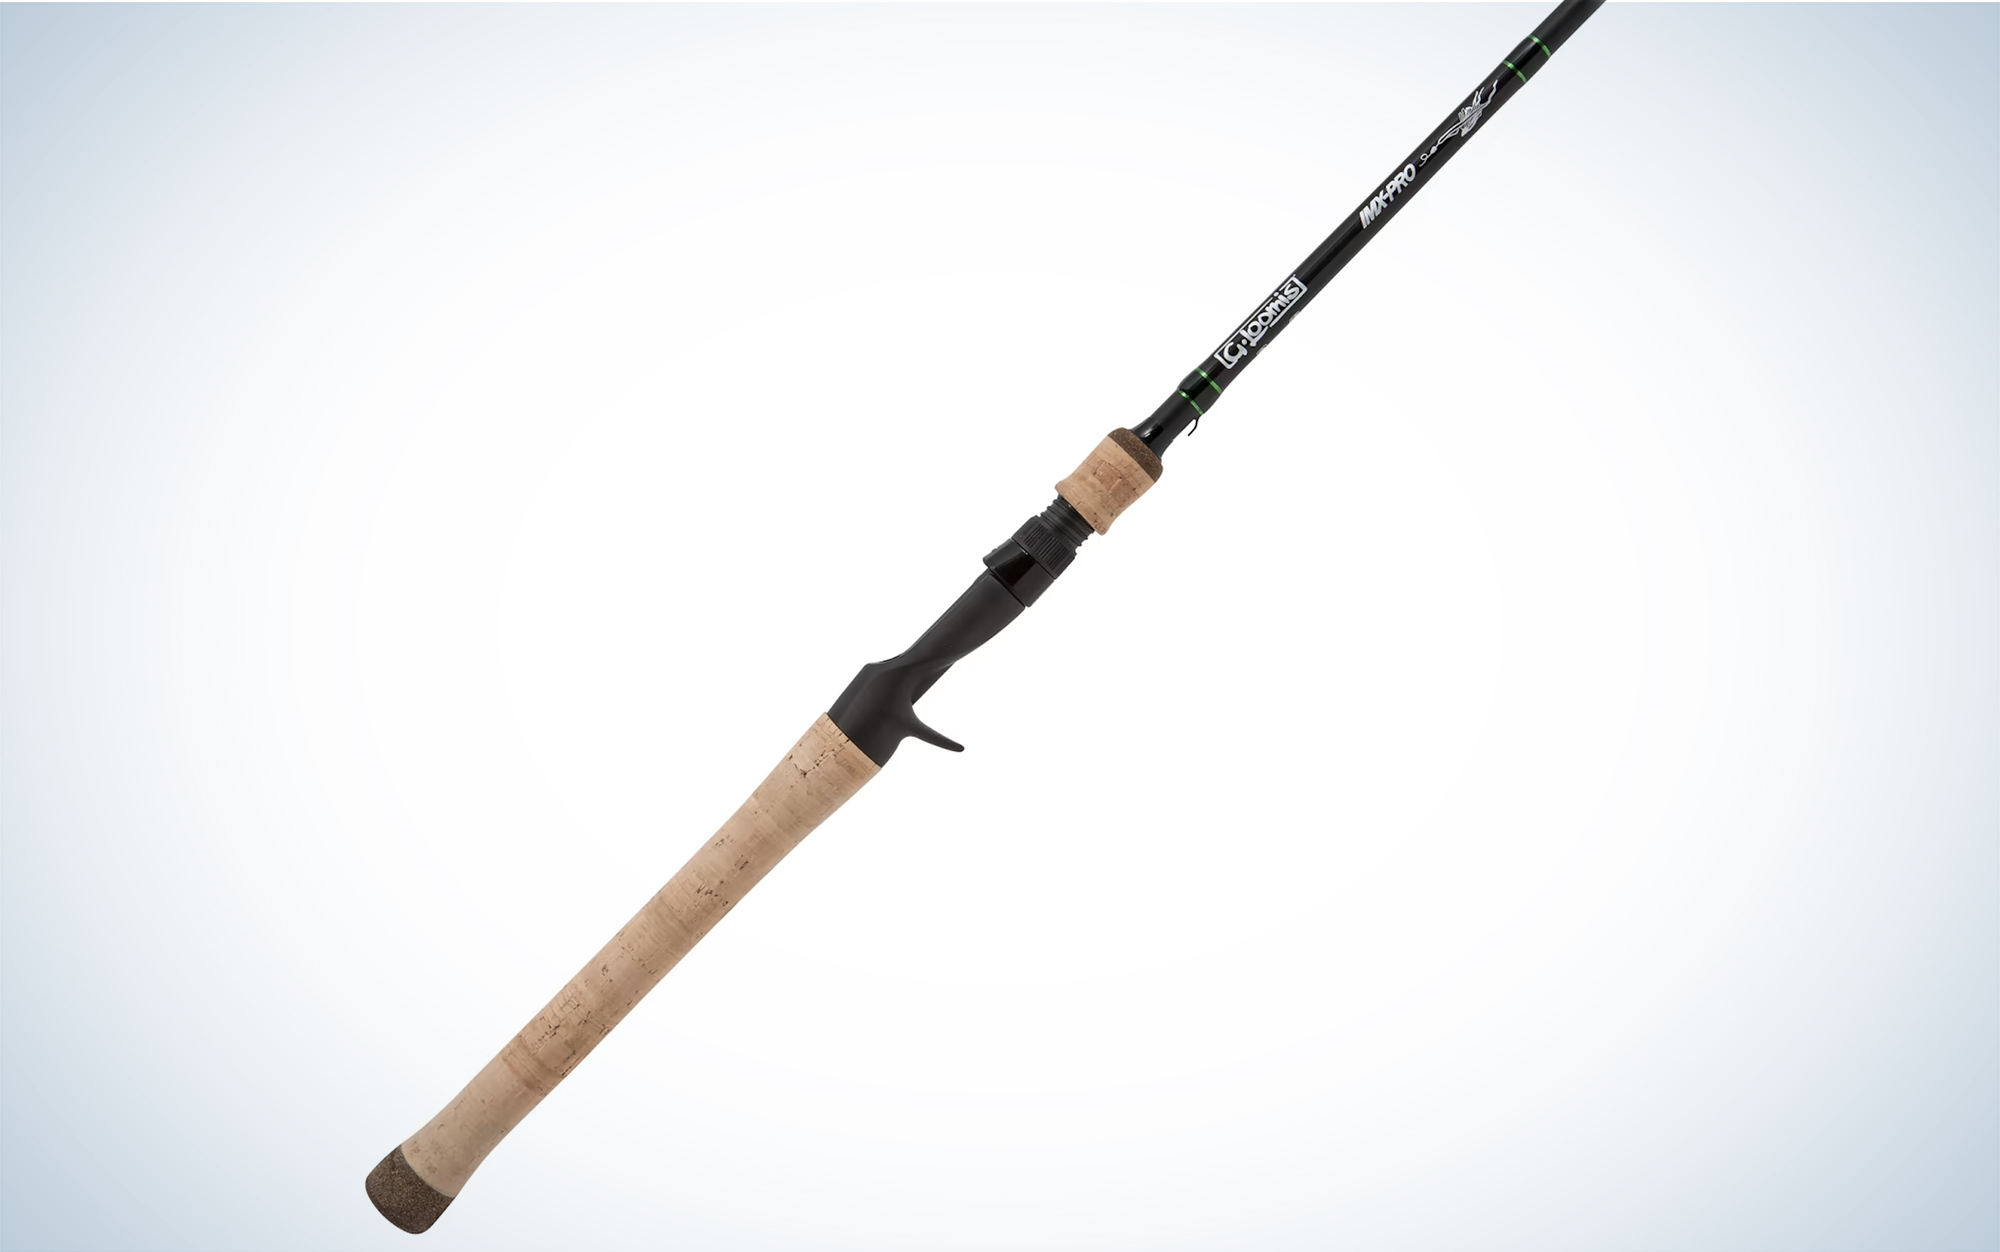 2023 pocket size fishing rod #fishingrod #gofishing #fishinggear